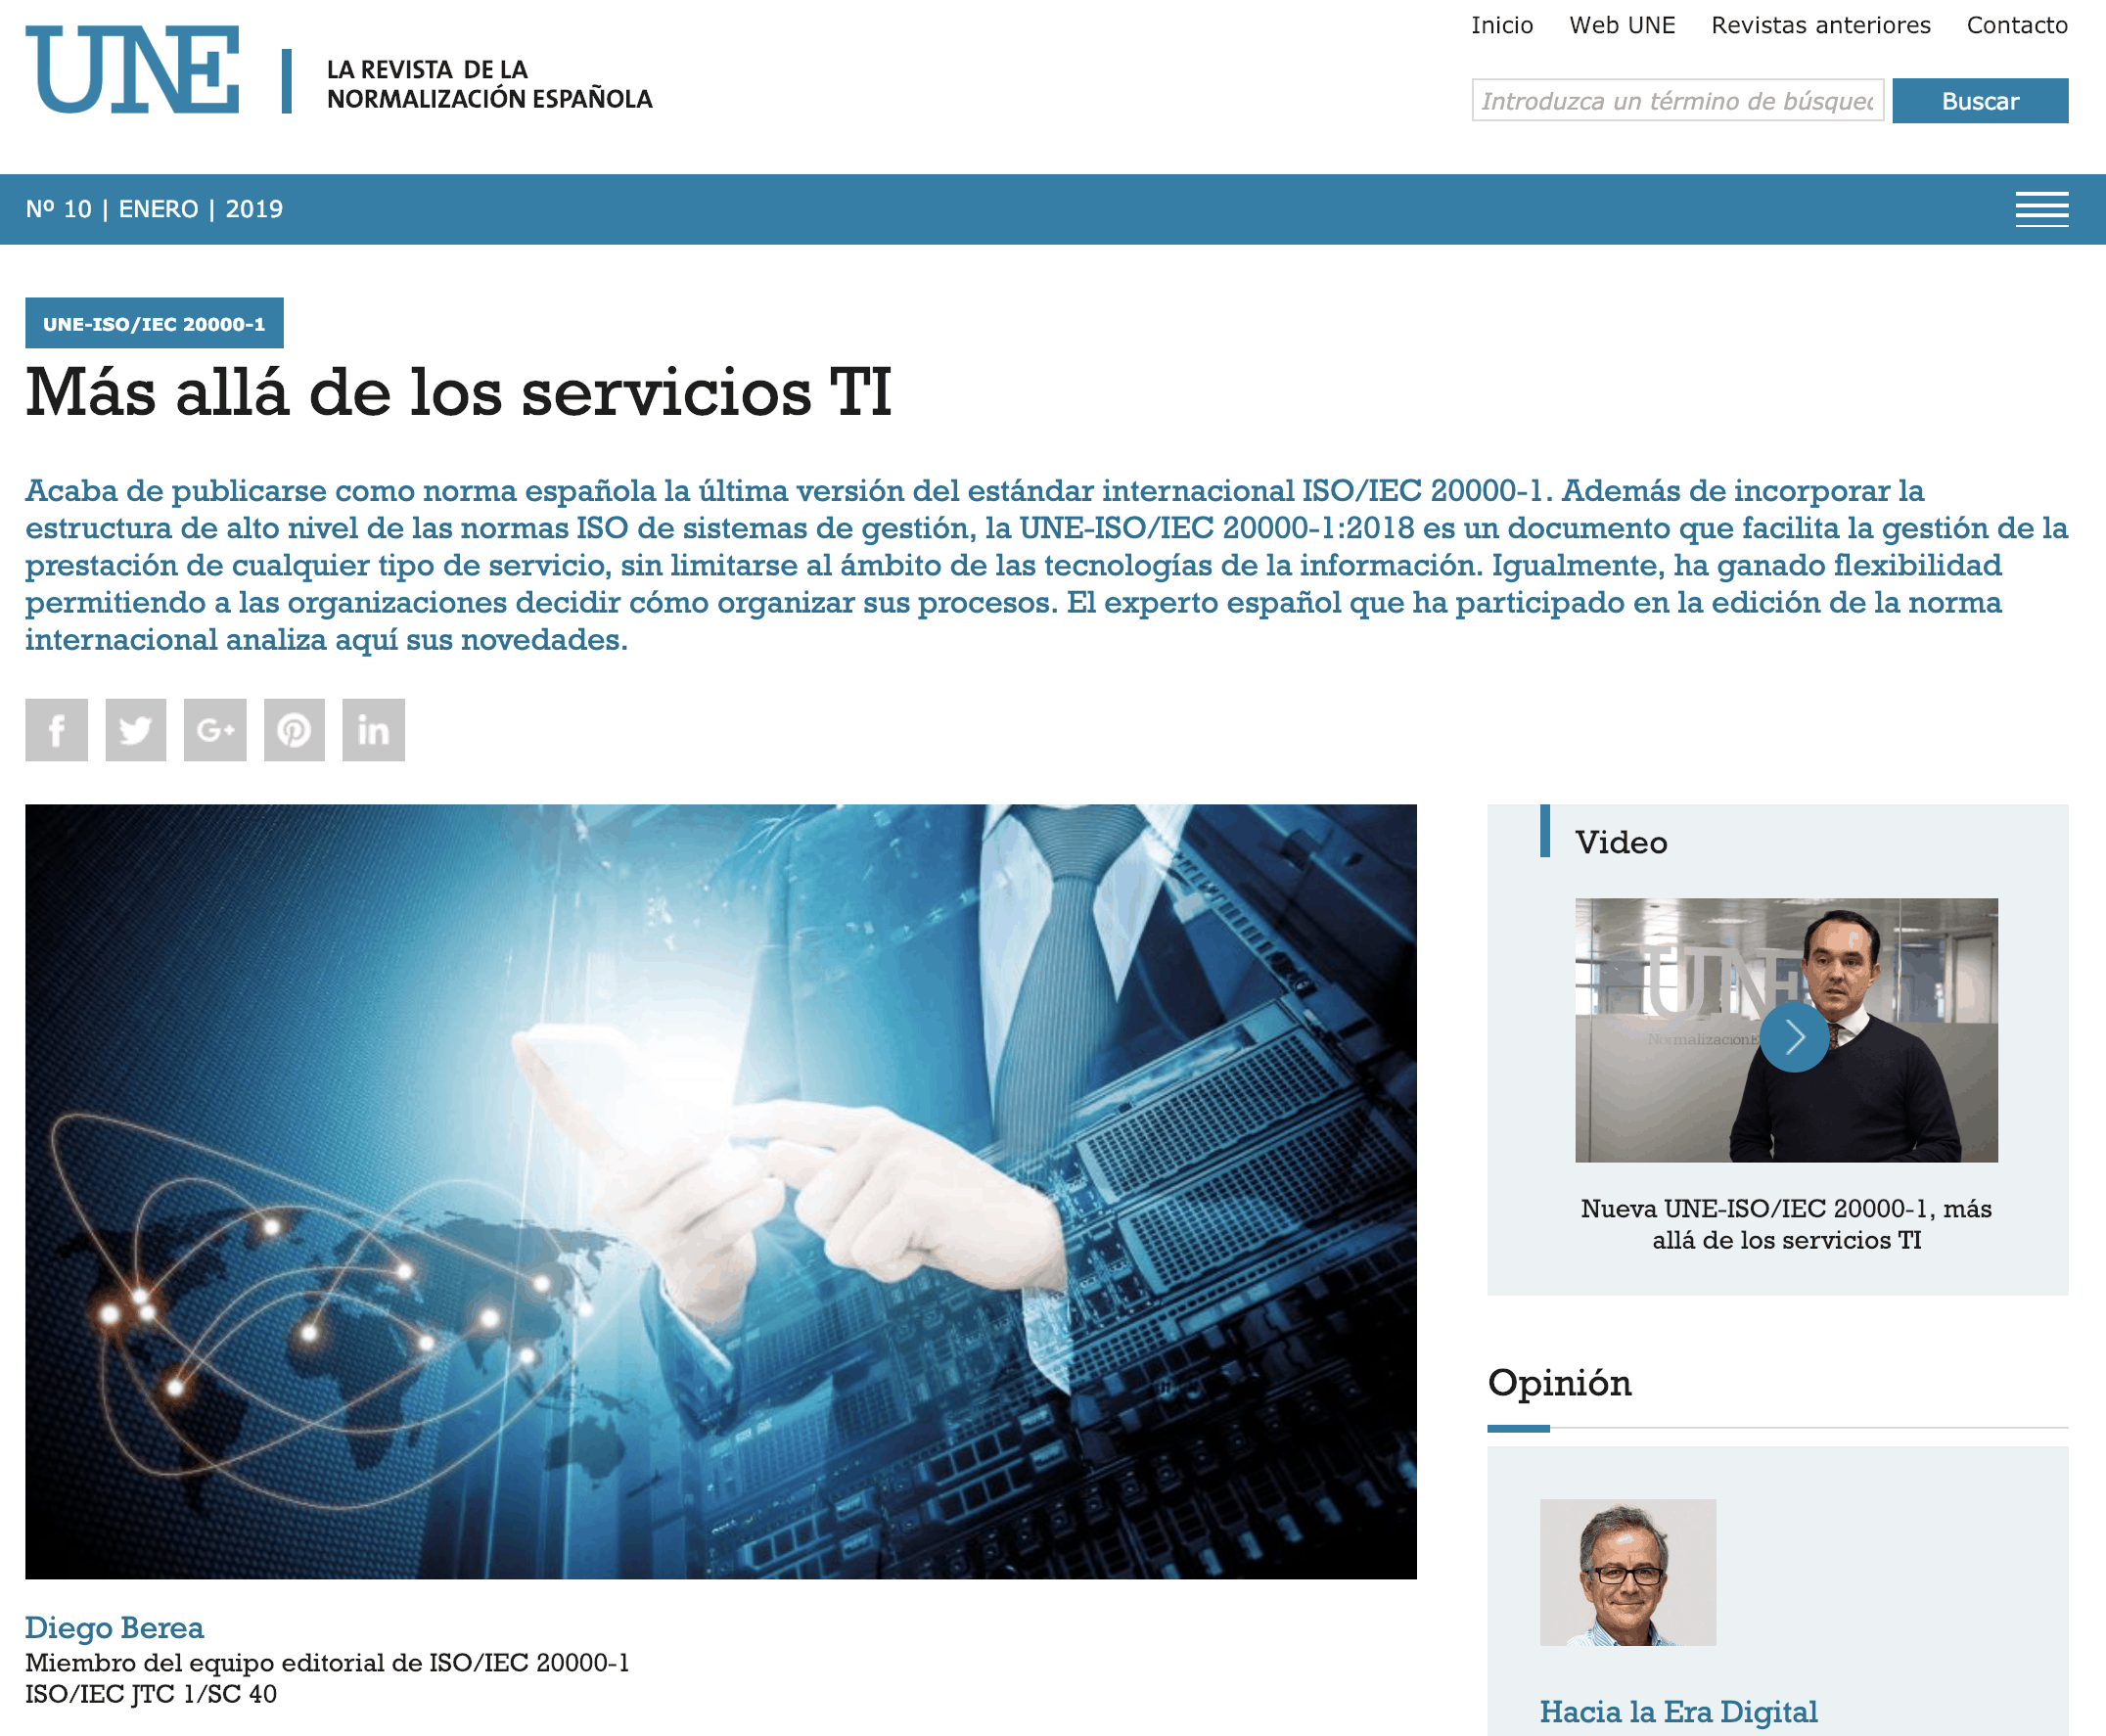 Artigo de Diego Berea sobre a ISO/IEC 20000-1:2018  na revista UNE